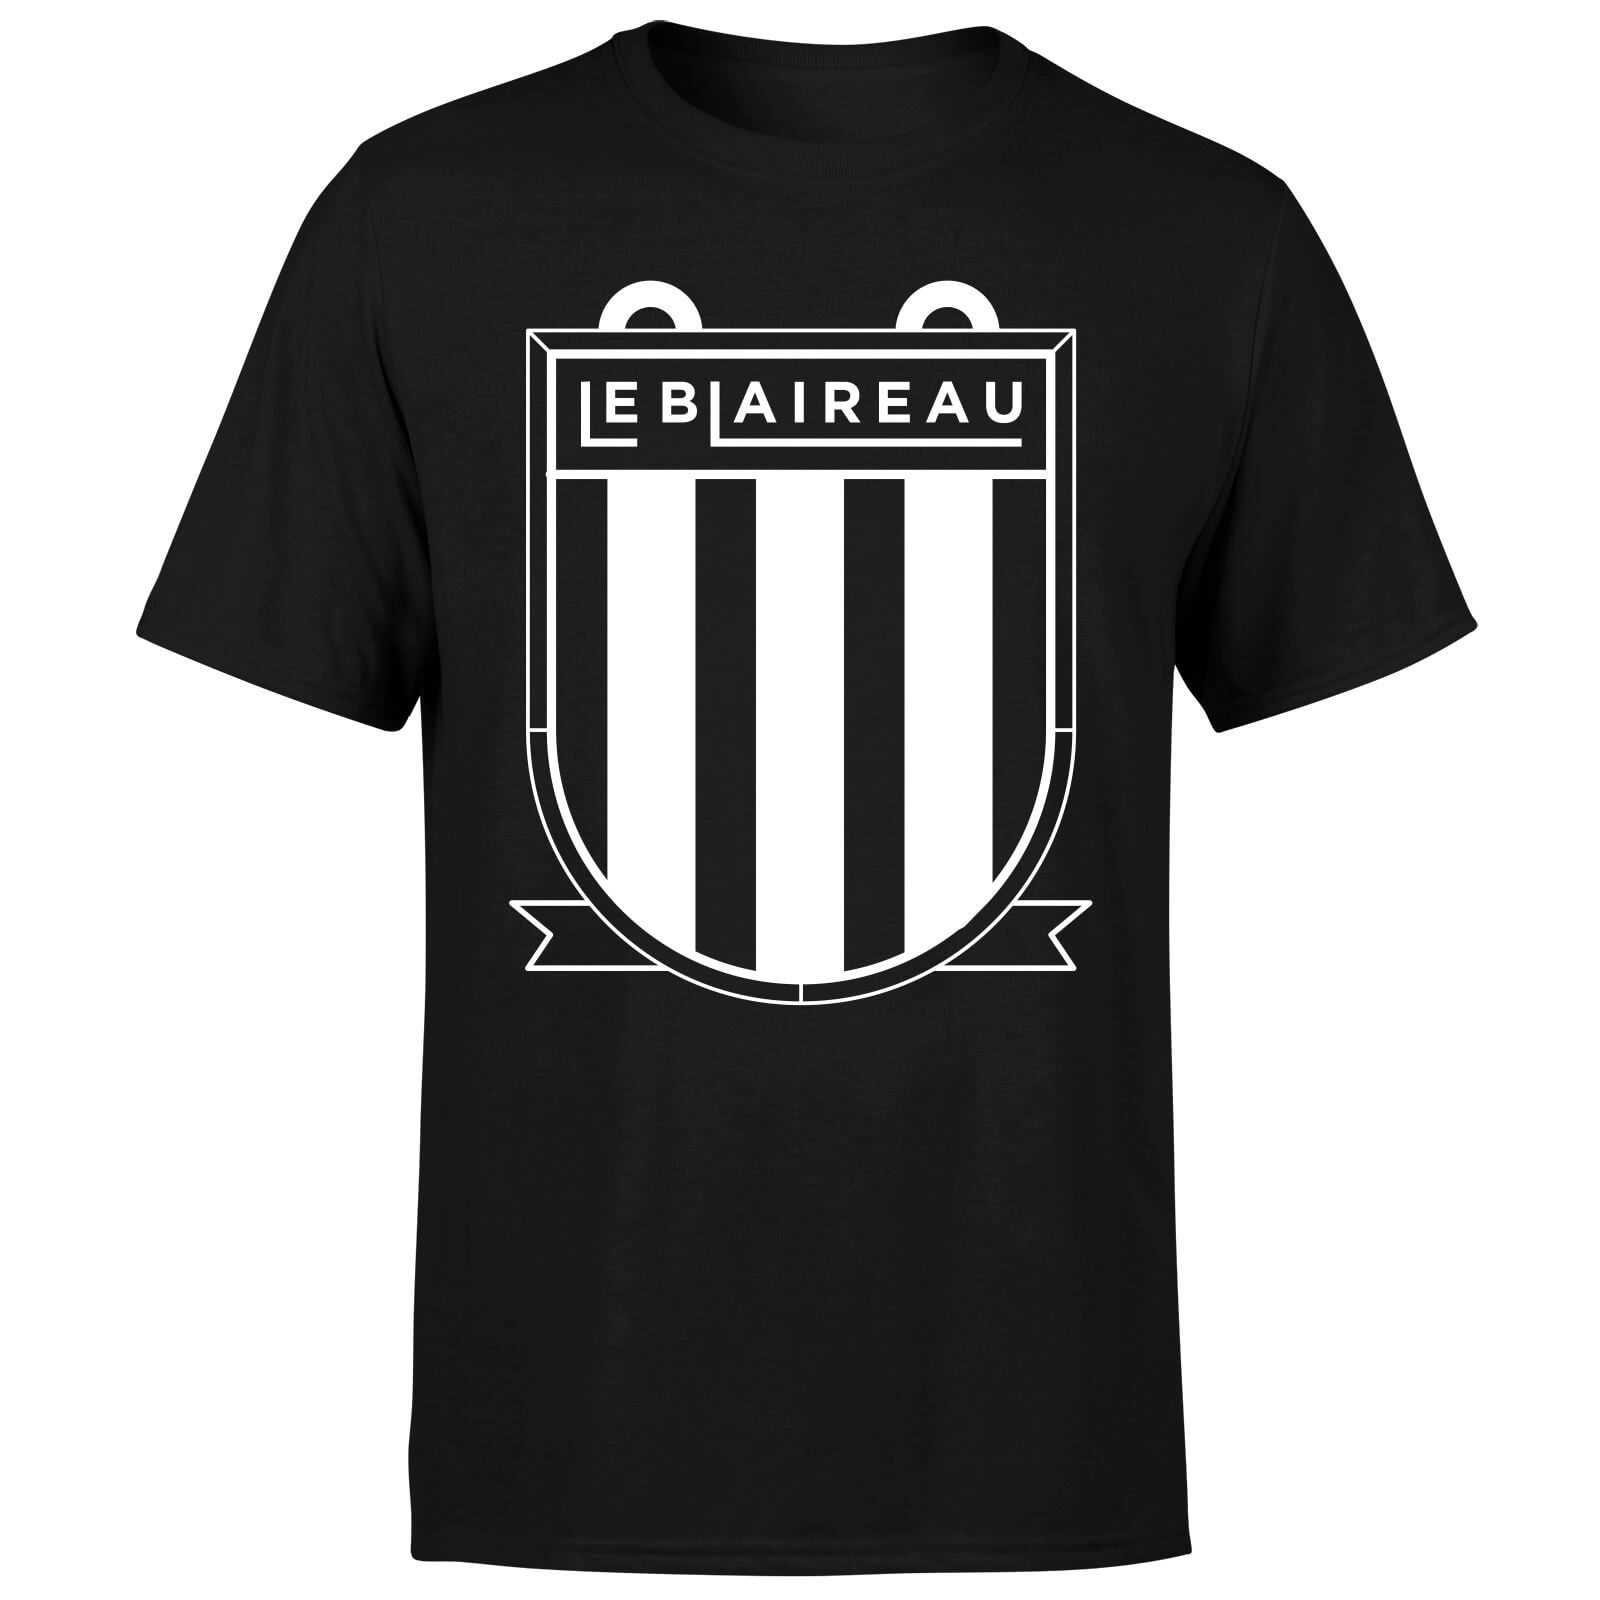 Le Blaireau Men's T-Shirt - M - Black